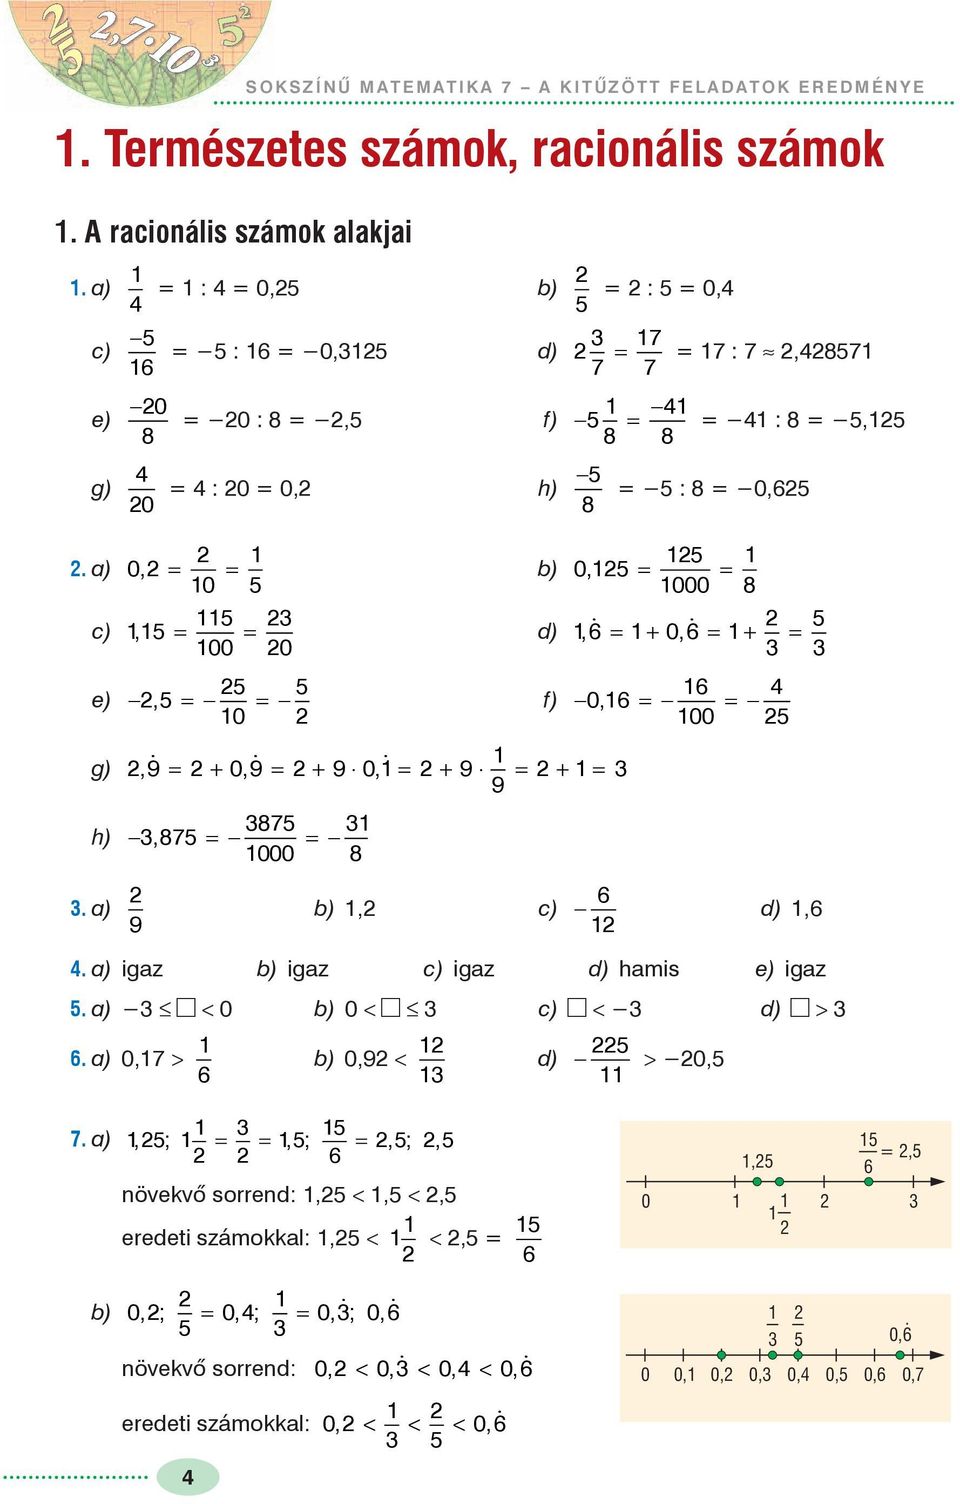 a) 0, = = 0 b) c), = = 00 0 d) e) -, = - = - f) 0 0, = = 000 8, = + 0, = + = - 0, = - = - 00 g) 9, = + 09, = + 9 0, = + 9 = + = 9 h) 87 -, 87 = - = - 000 8. a) b), c) - d), 9.